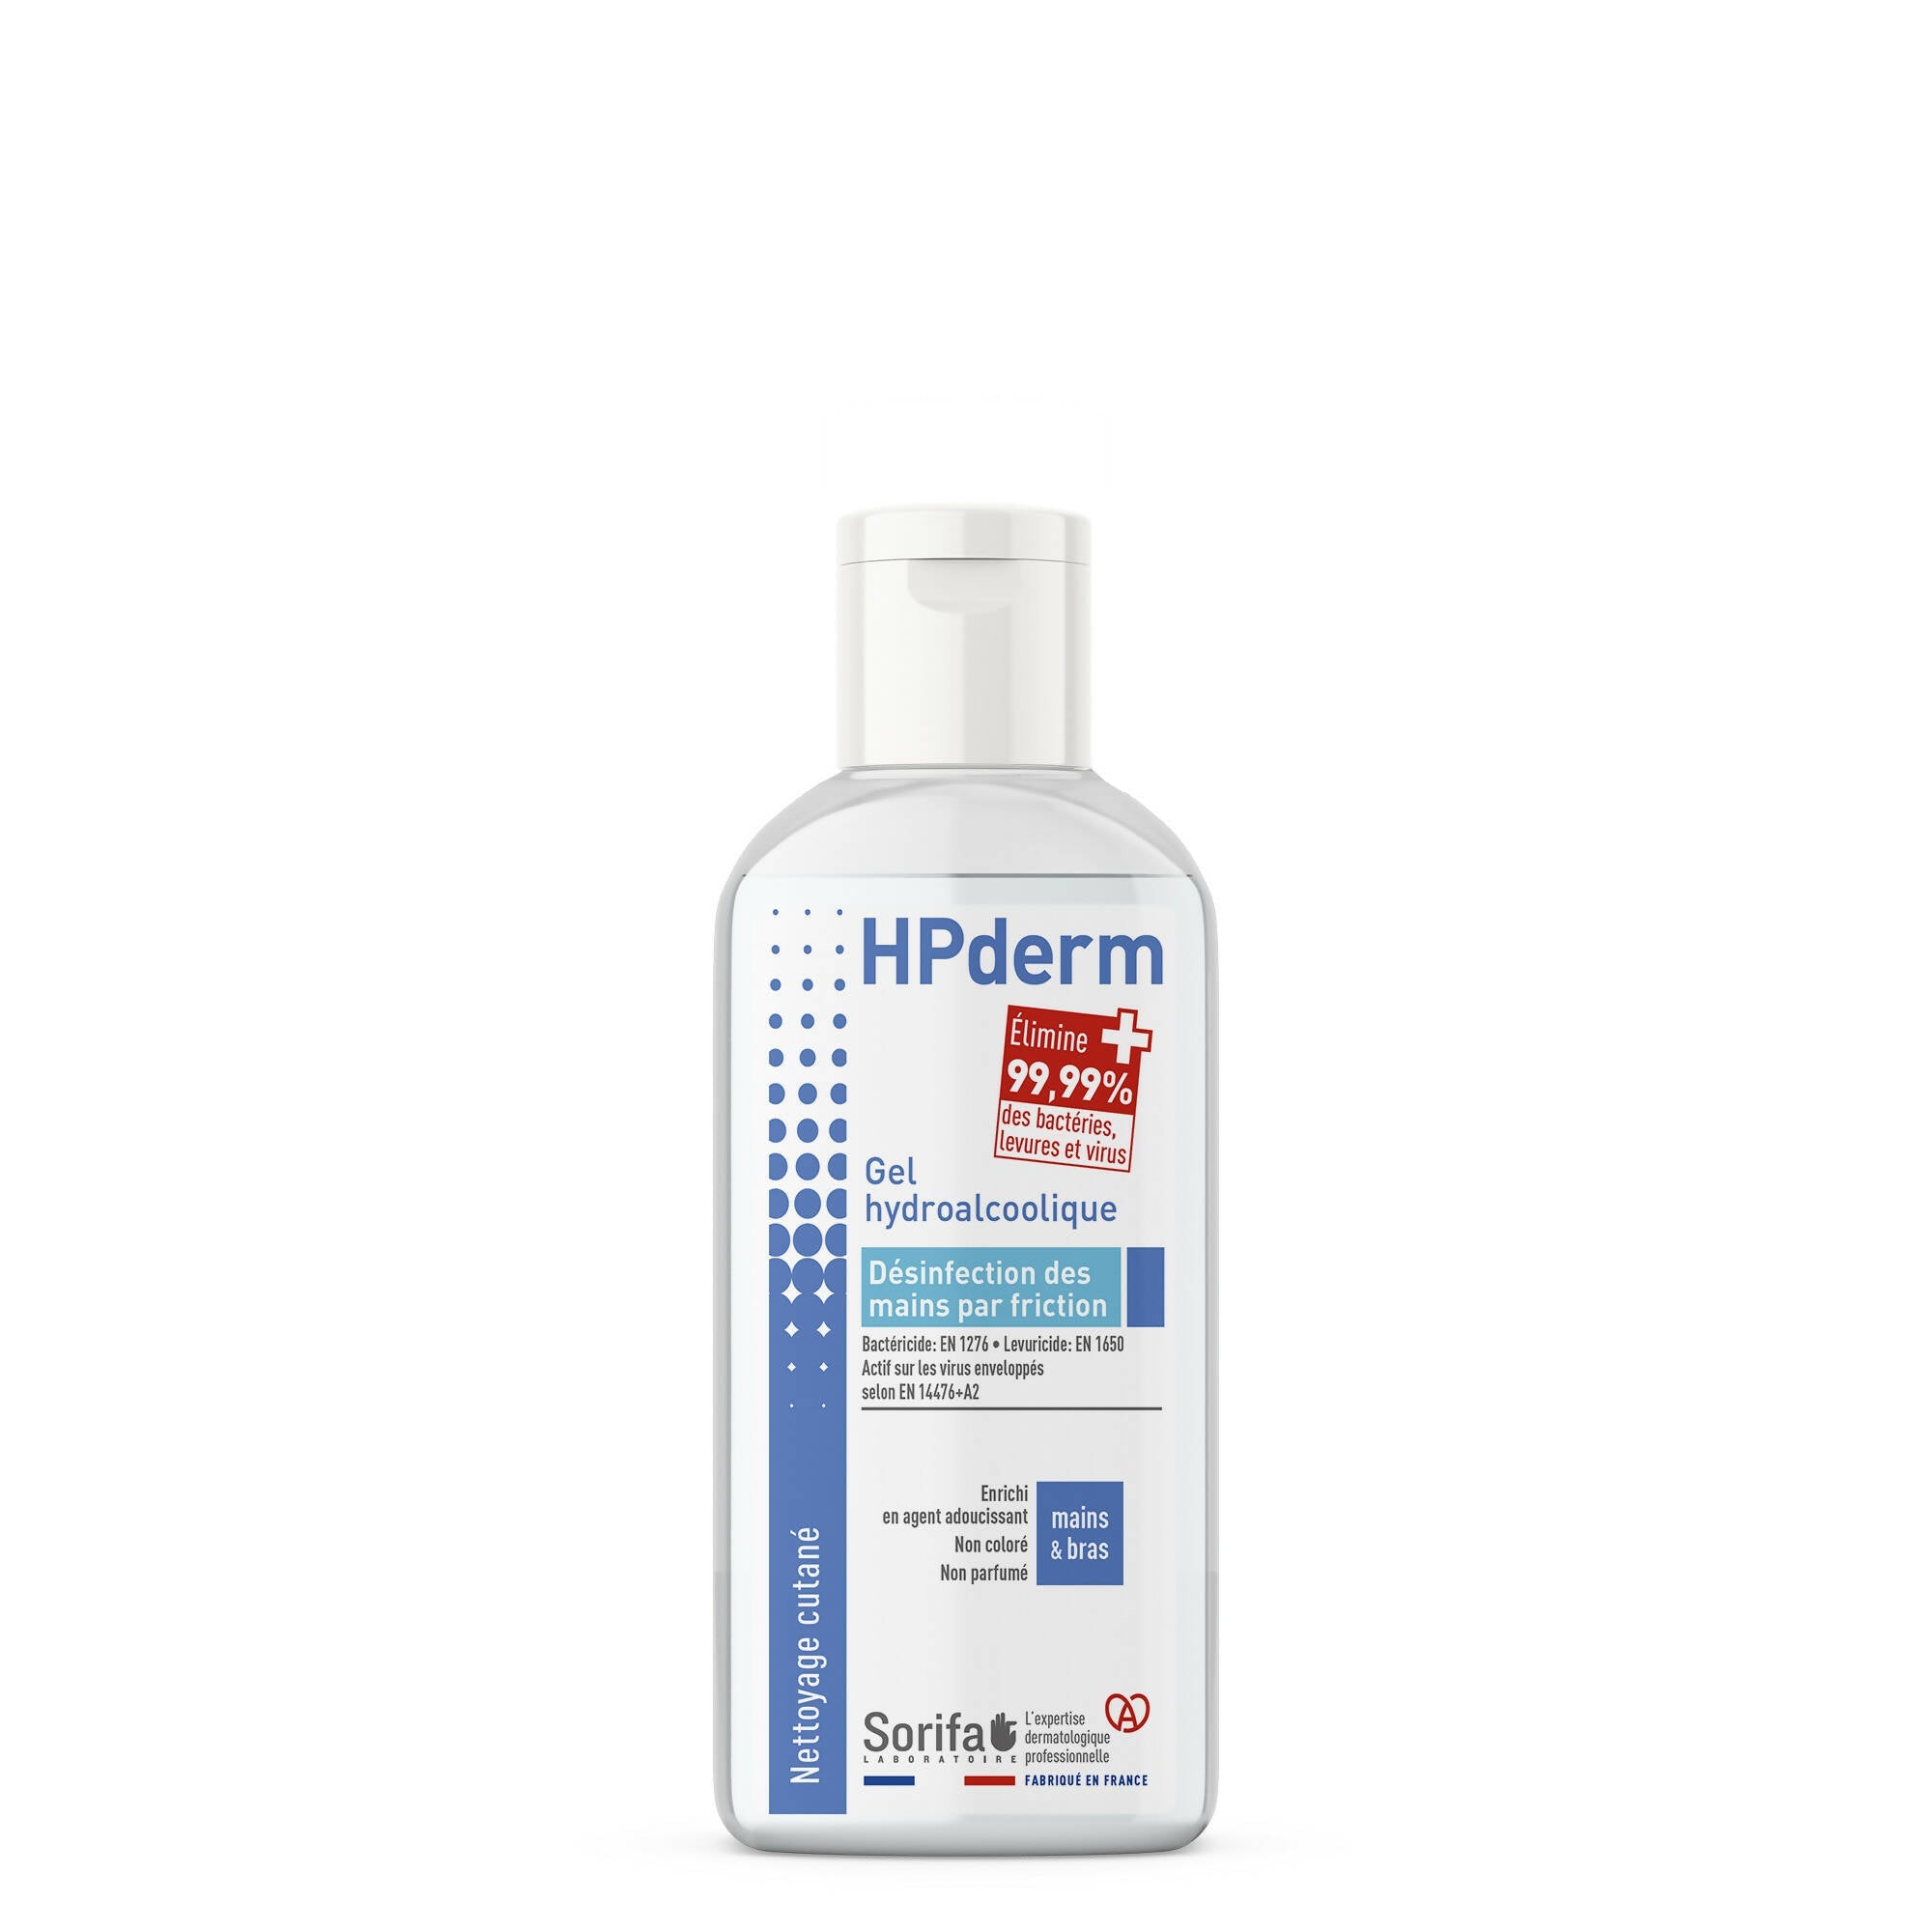 SORIFA - Lot de 5 - HPderm Gel hydroalcoolique pour la désinfection des mains - Flacon 100 ml - 0